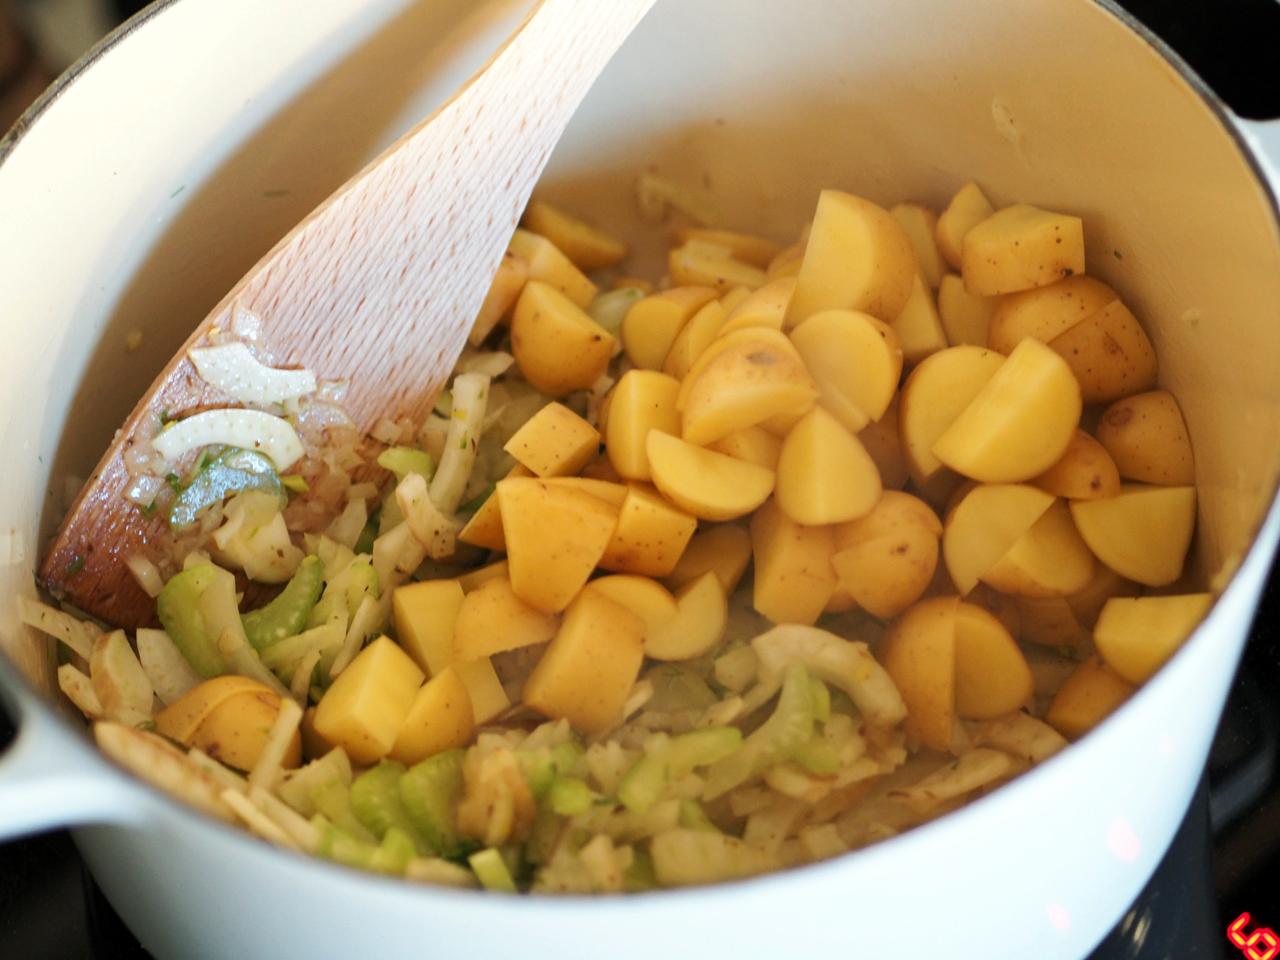 Del potetene i passelige biter og ha over i gryta. Hell på kyllingkraft og vann og la det koke opp. Skru så ned temperaturen og la gryta stå og småputre i 20-30 minutter.